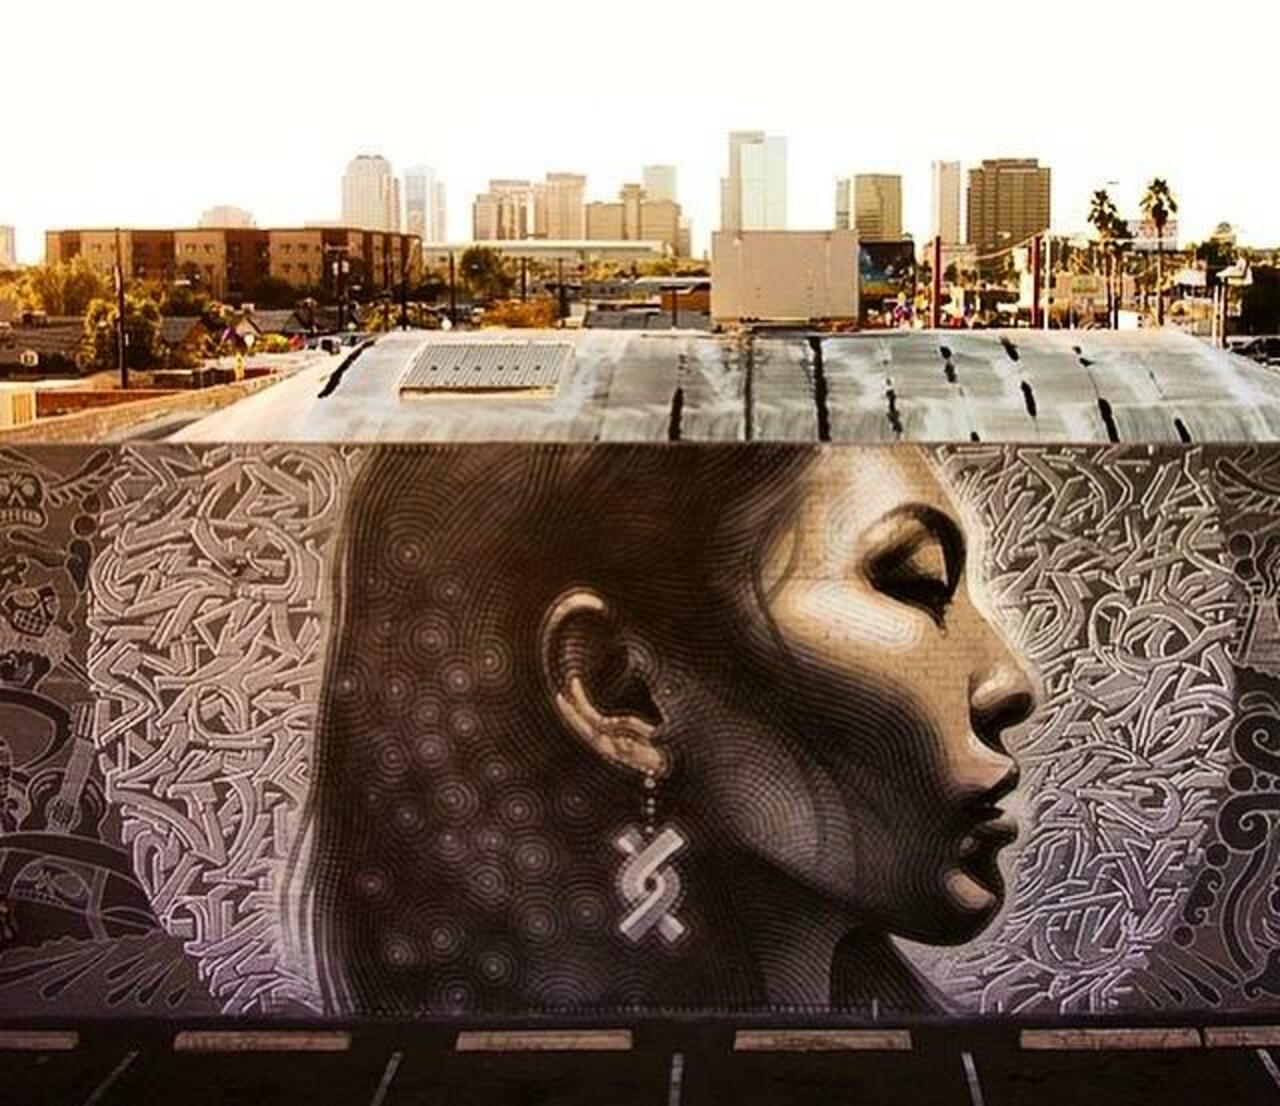 Latest Street Art work by El Mac in Phoenix, Arizona

#art #mural #graffiti #streetart http://t.co/Wq3t1gEXyc